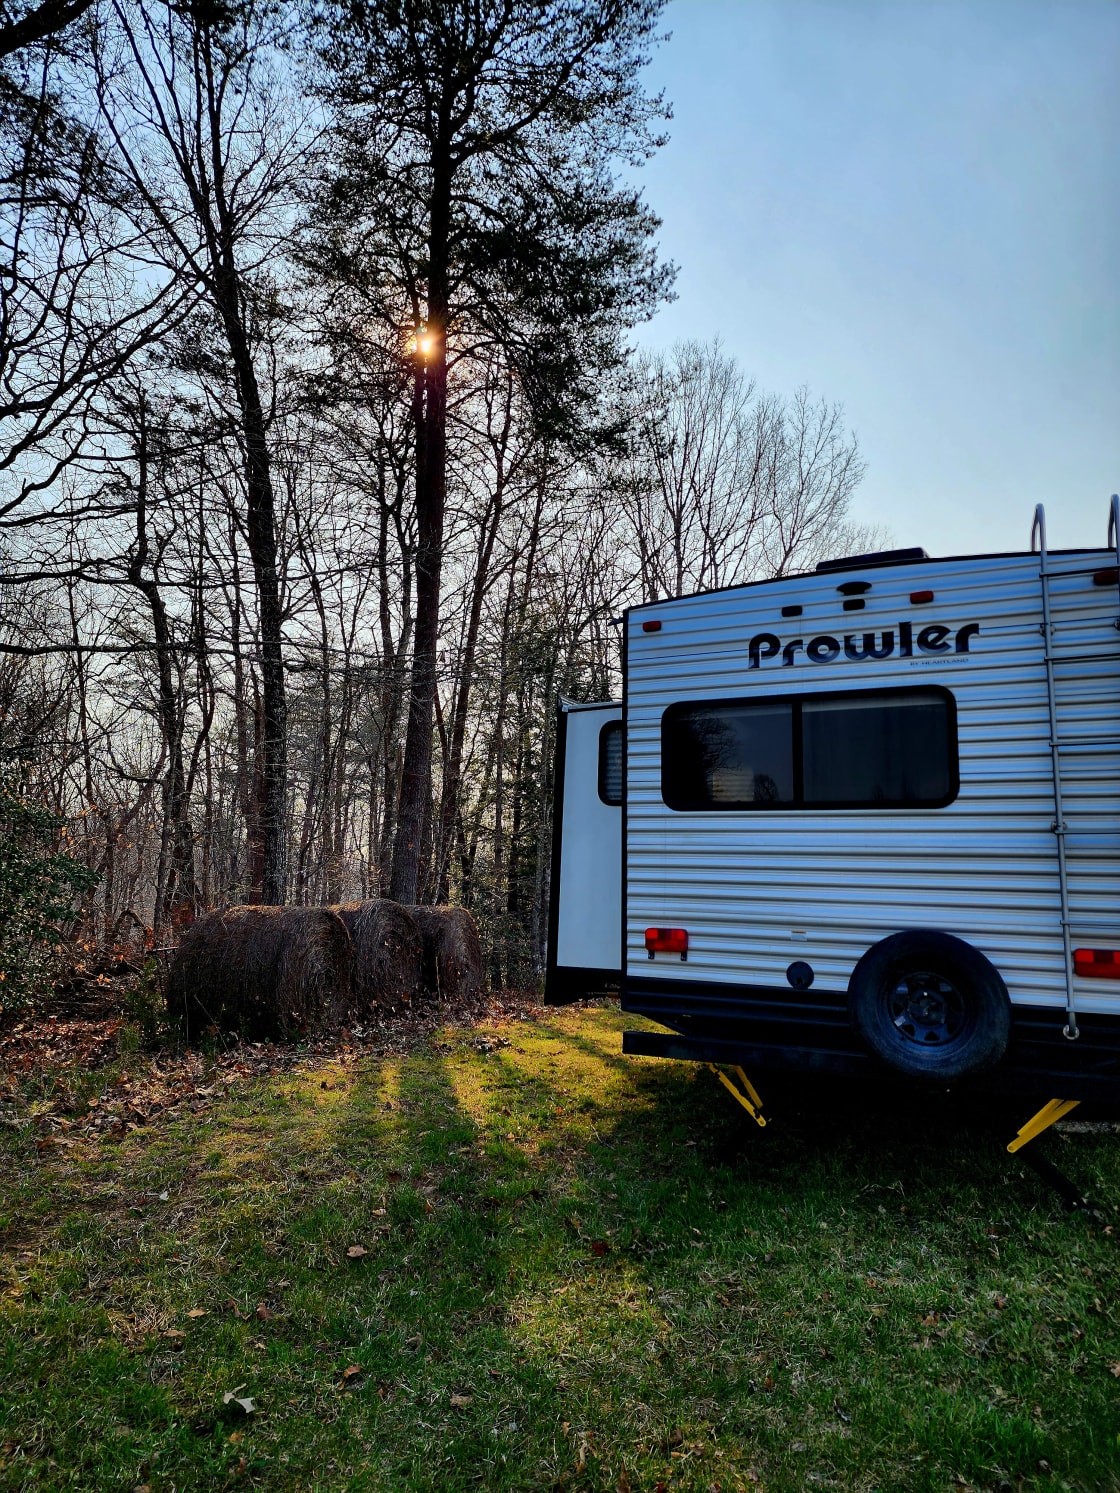 The Harrican RV/Camper